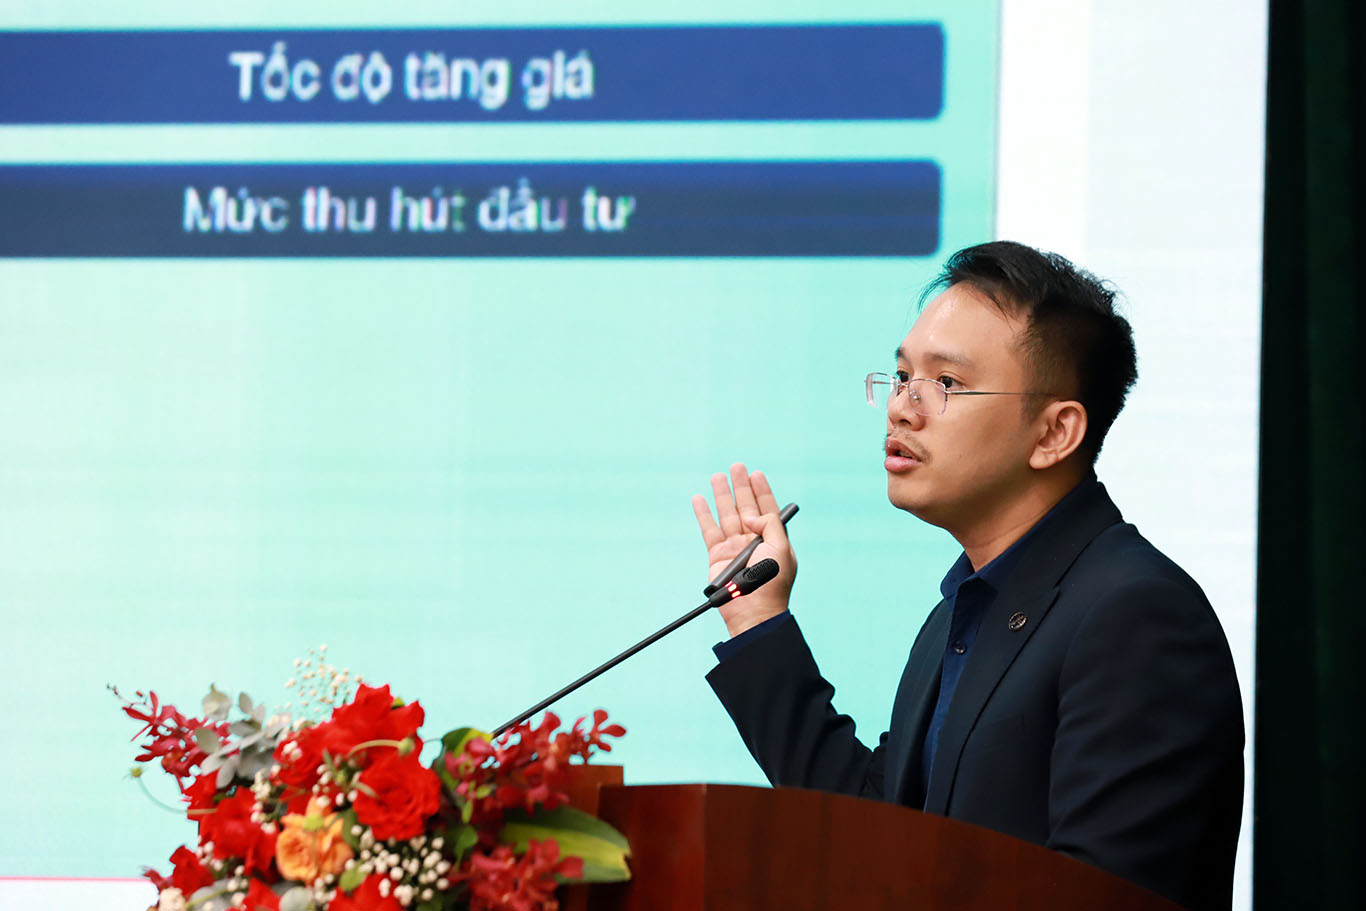 Ông Nguyễn Quốc Anh - Phó Tổng giám đốc Batdongsan.com.vn